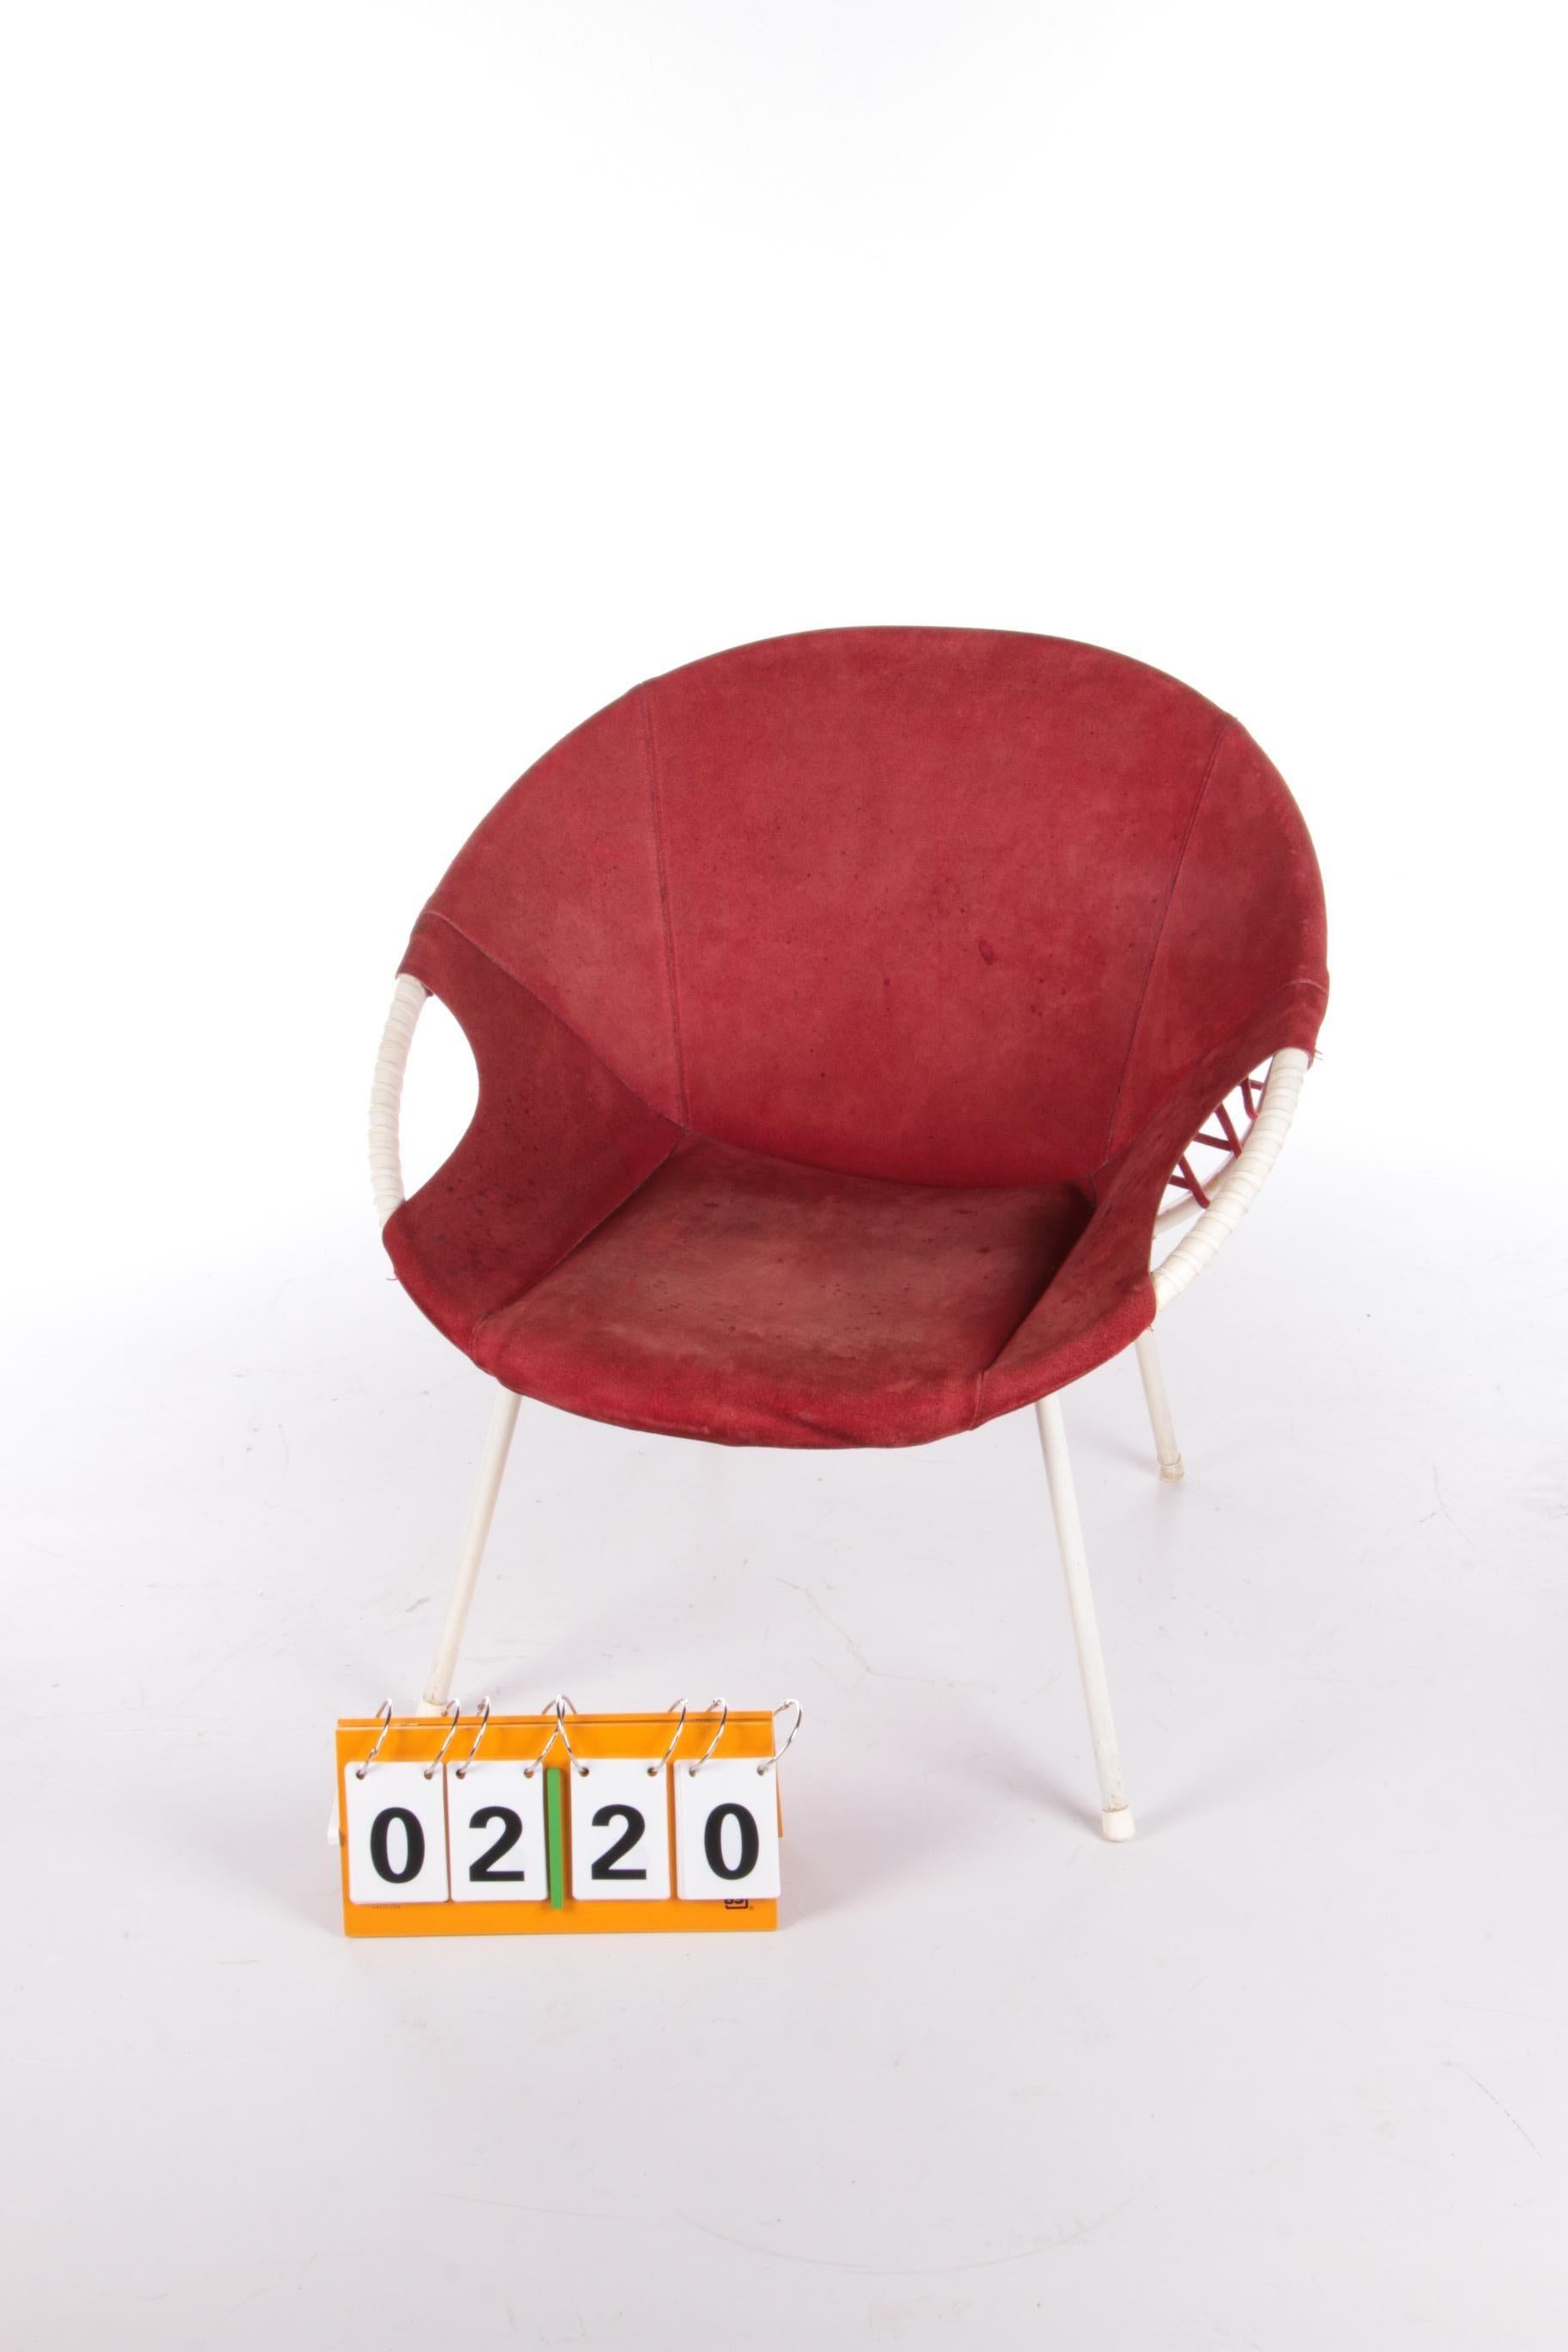 Mid-Century Modern Vintage Balloon Chair Design by Lusch Erzeugnis, 1960s